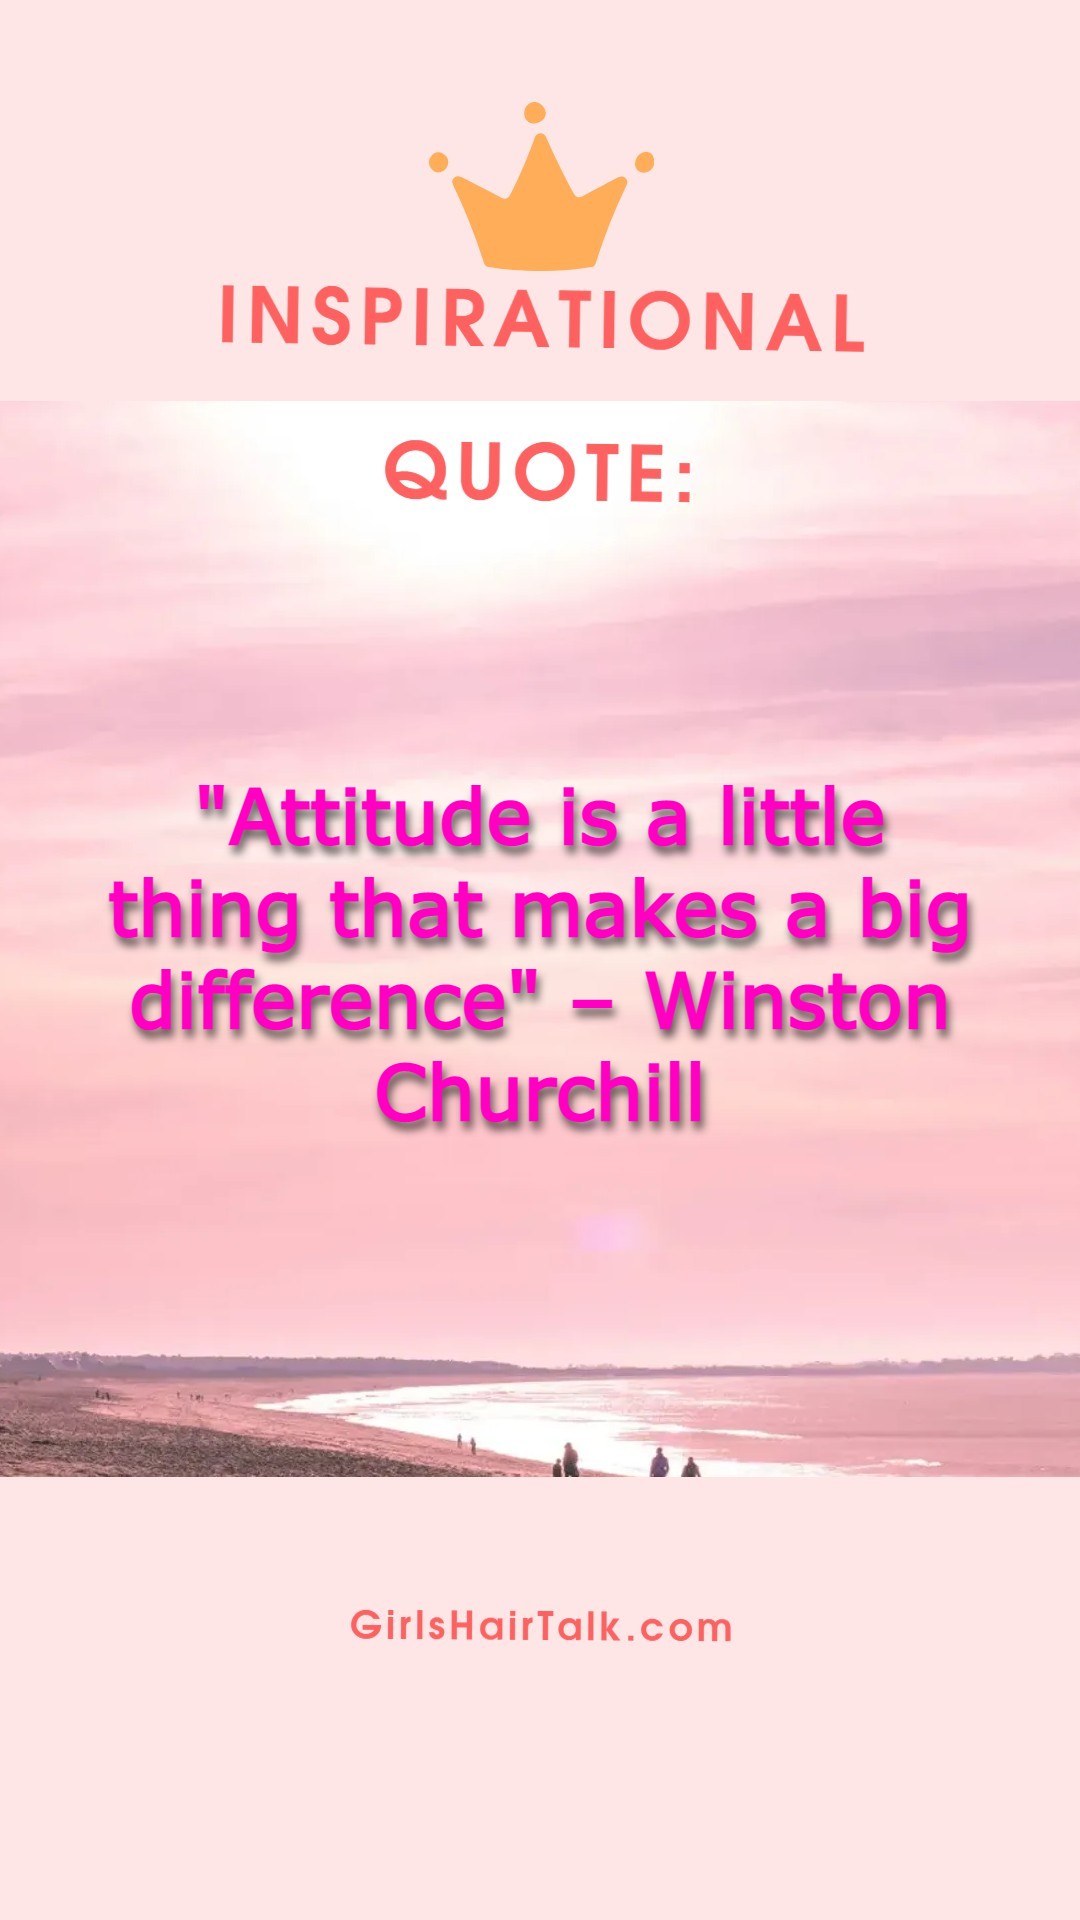 Winston Churchill cancer quote